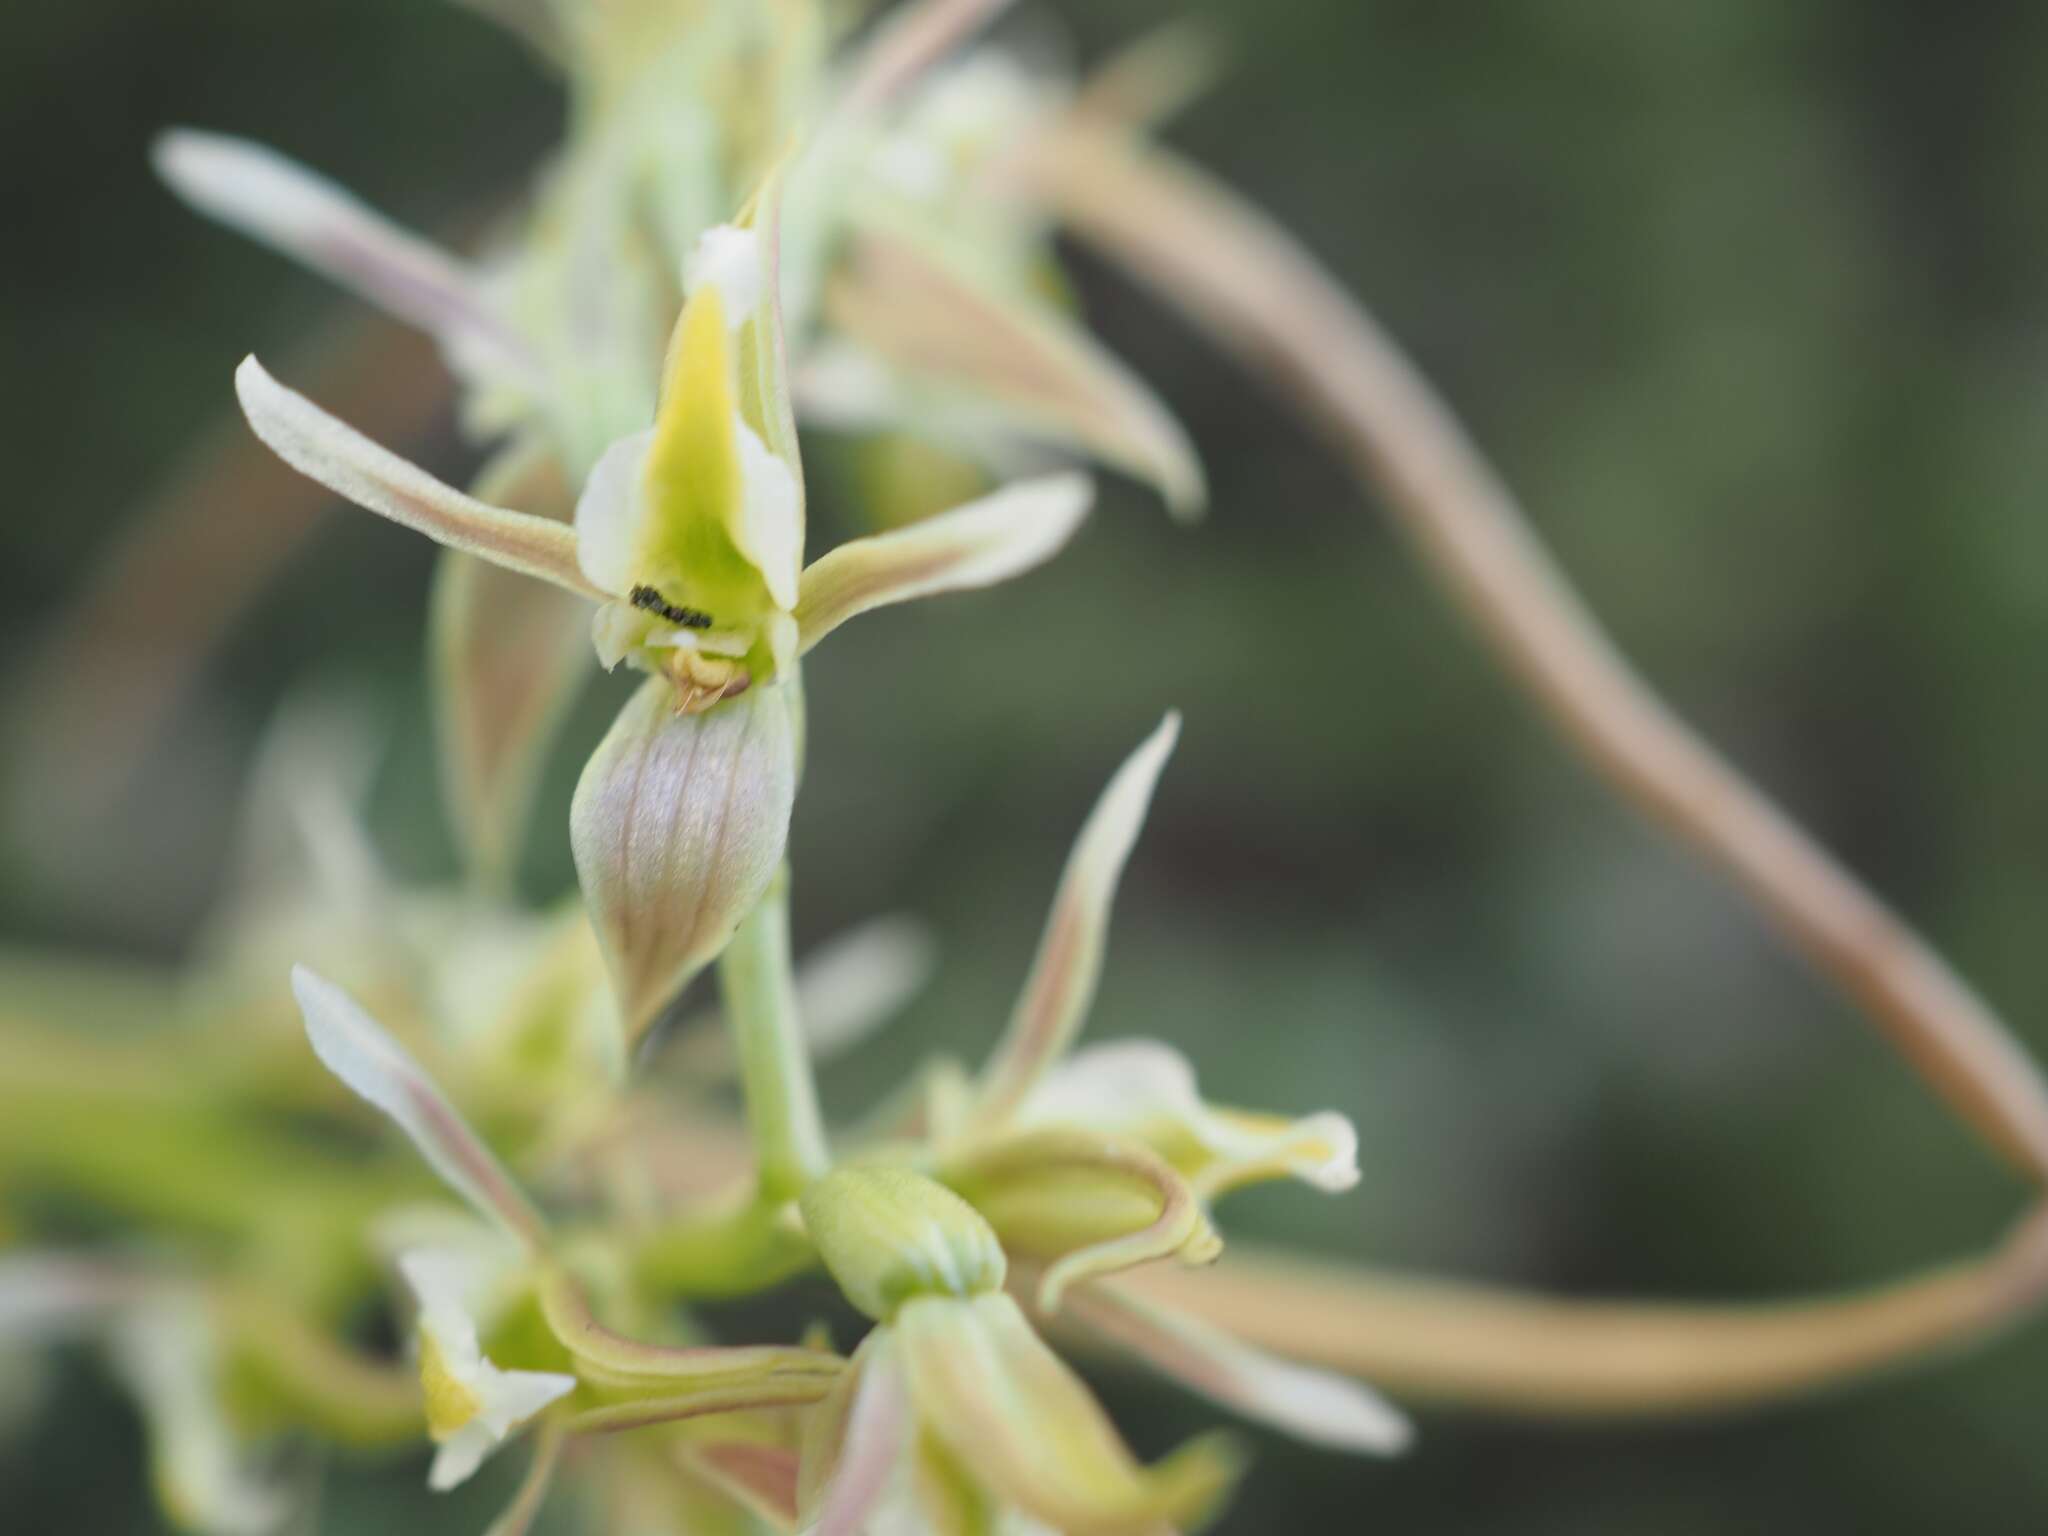 Image of Tarengo leek orchid